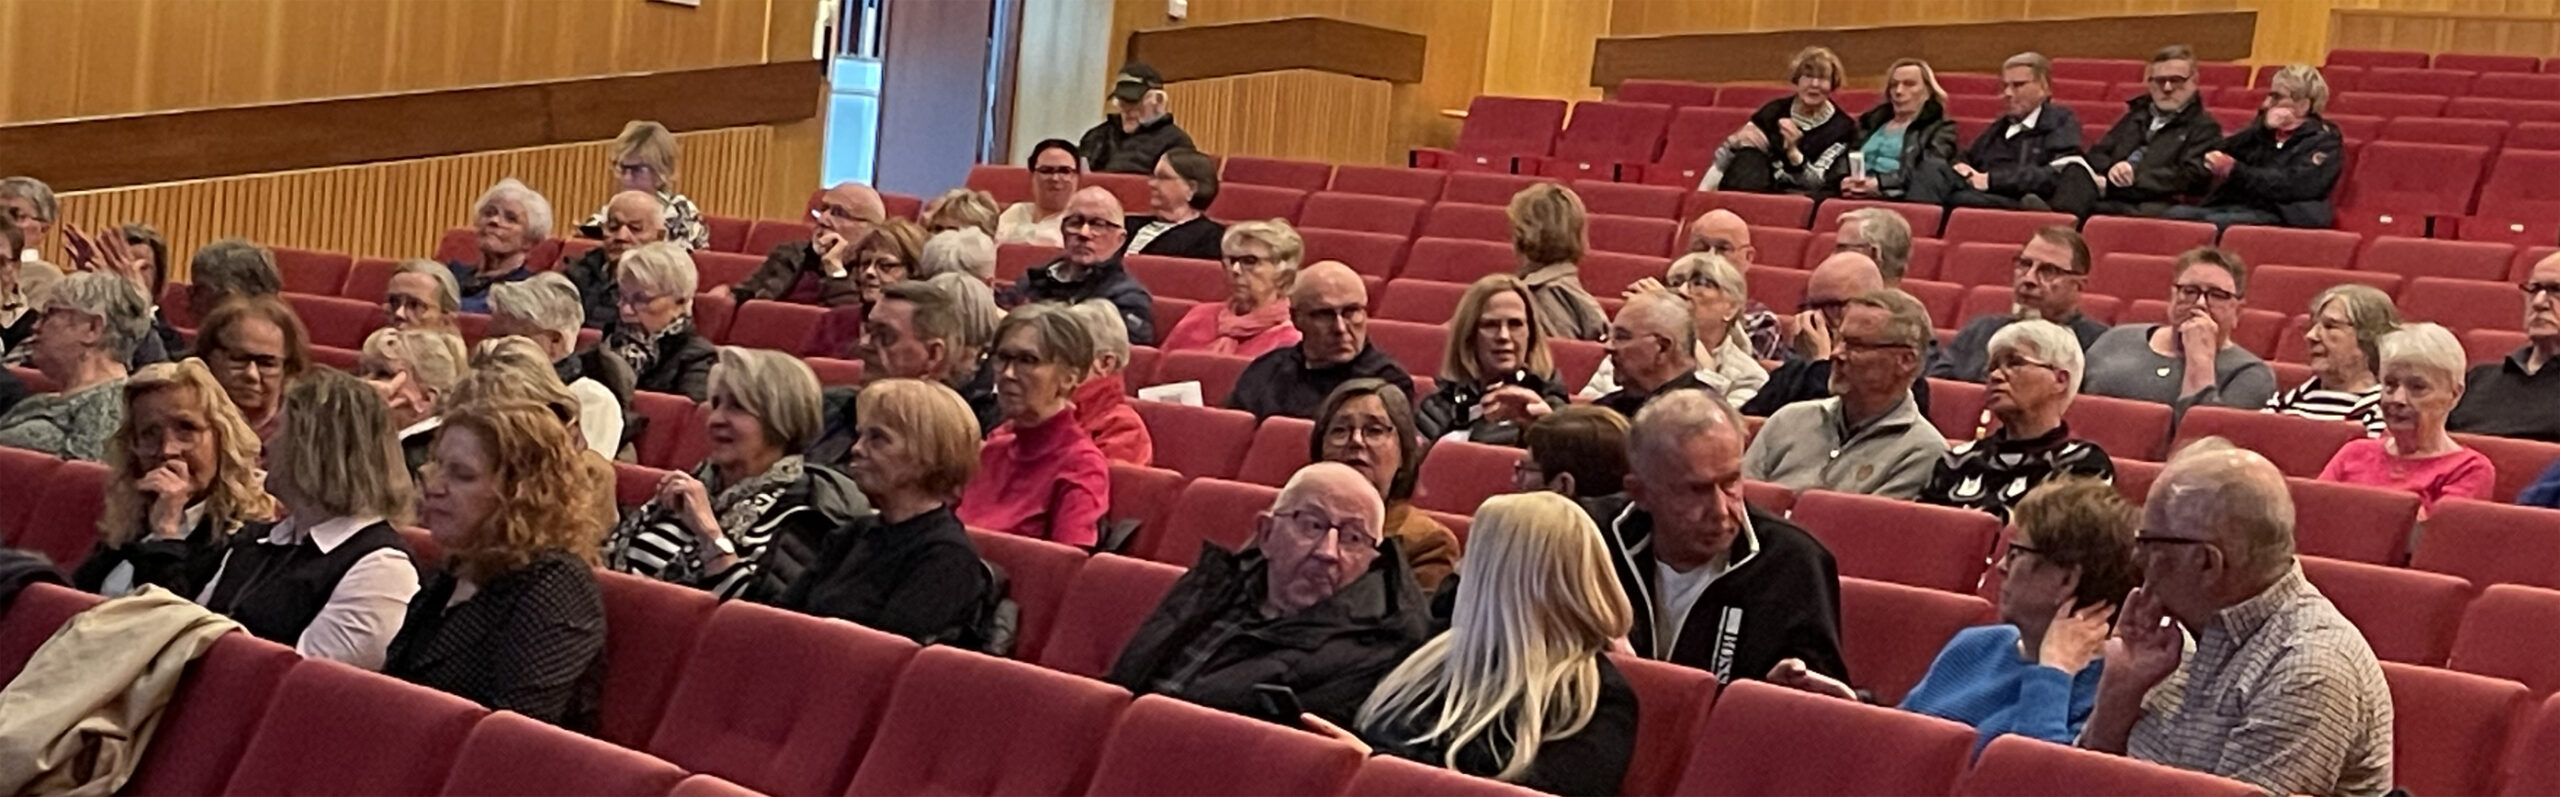 Publiken i Christinasalen lyssnade intresserat på redovisningen när det gäller utvecklingen inom cancervården.